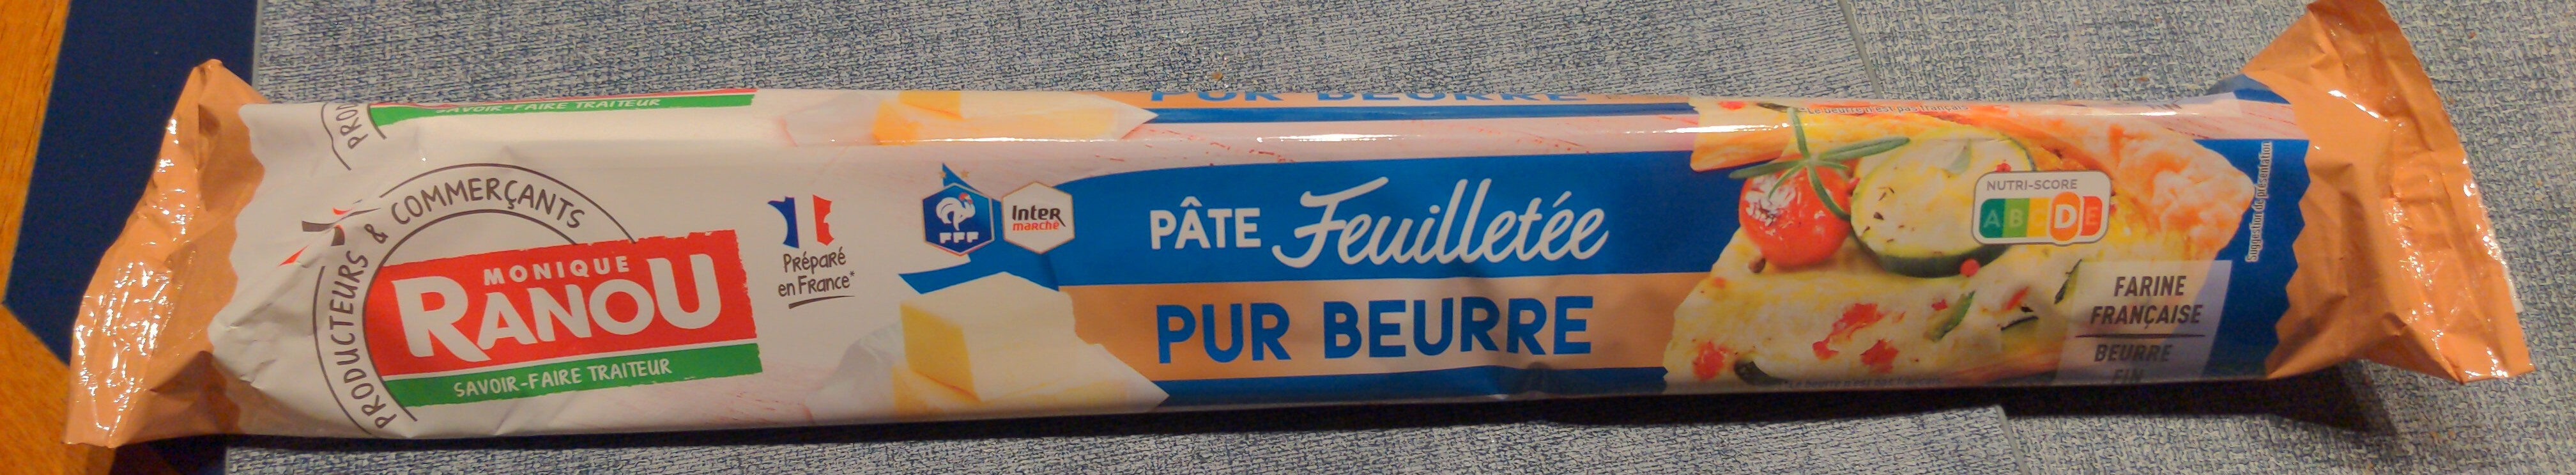 Pâte Feuilletée Pur Beurre - Product - fr